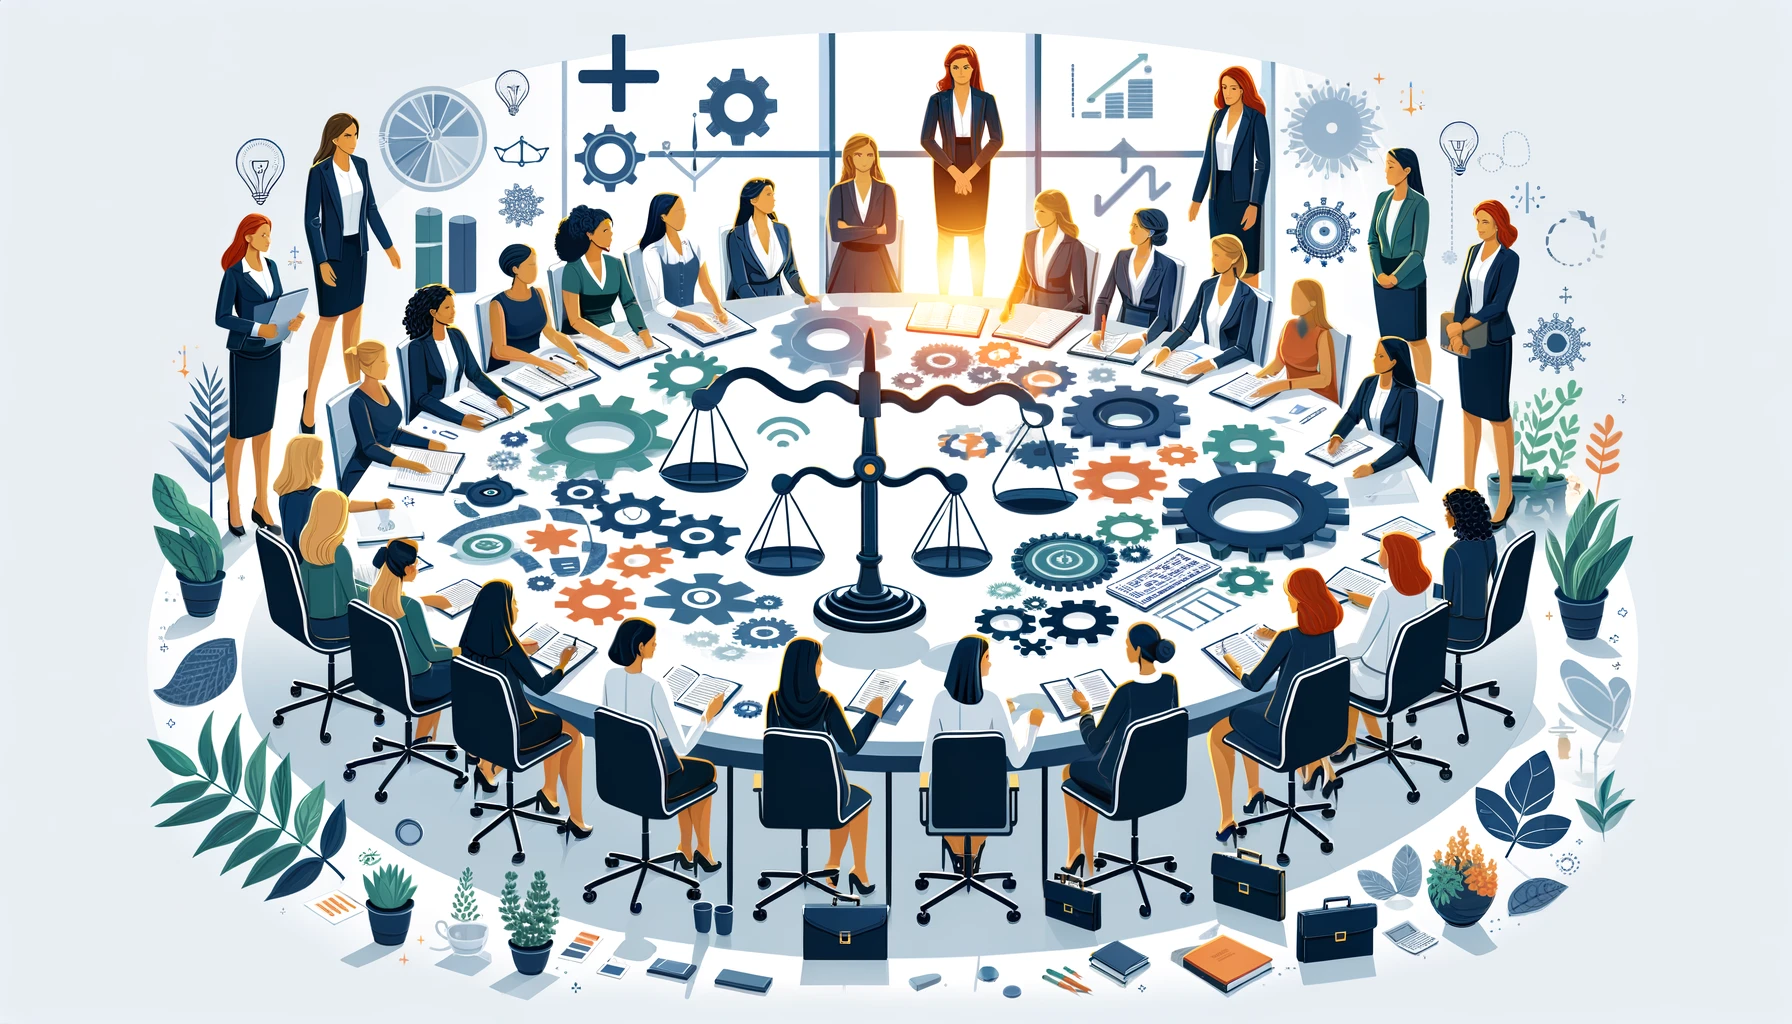 Frauen im Betriebsrat: Die treibende Kraft hinter der Gleichstellung in Unternehmen